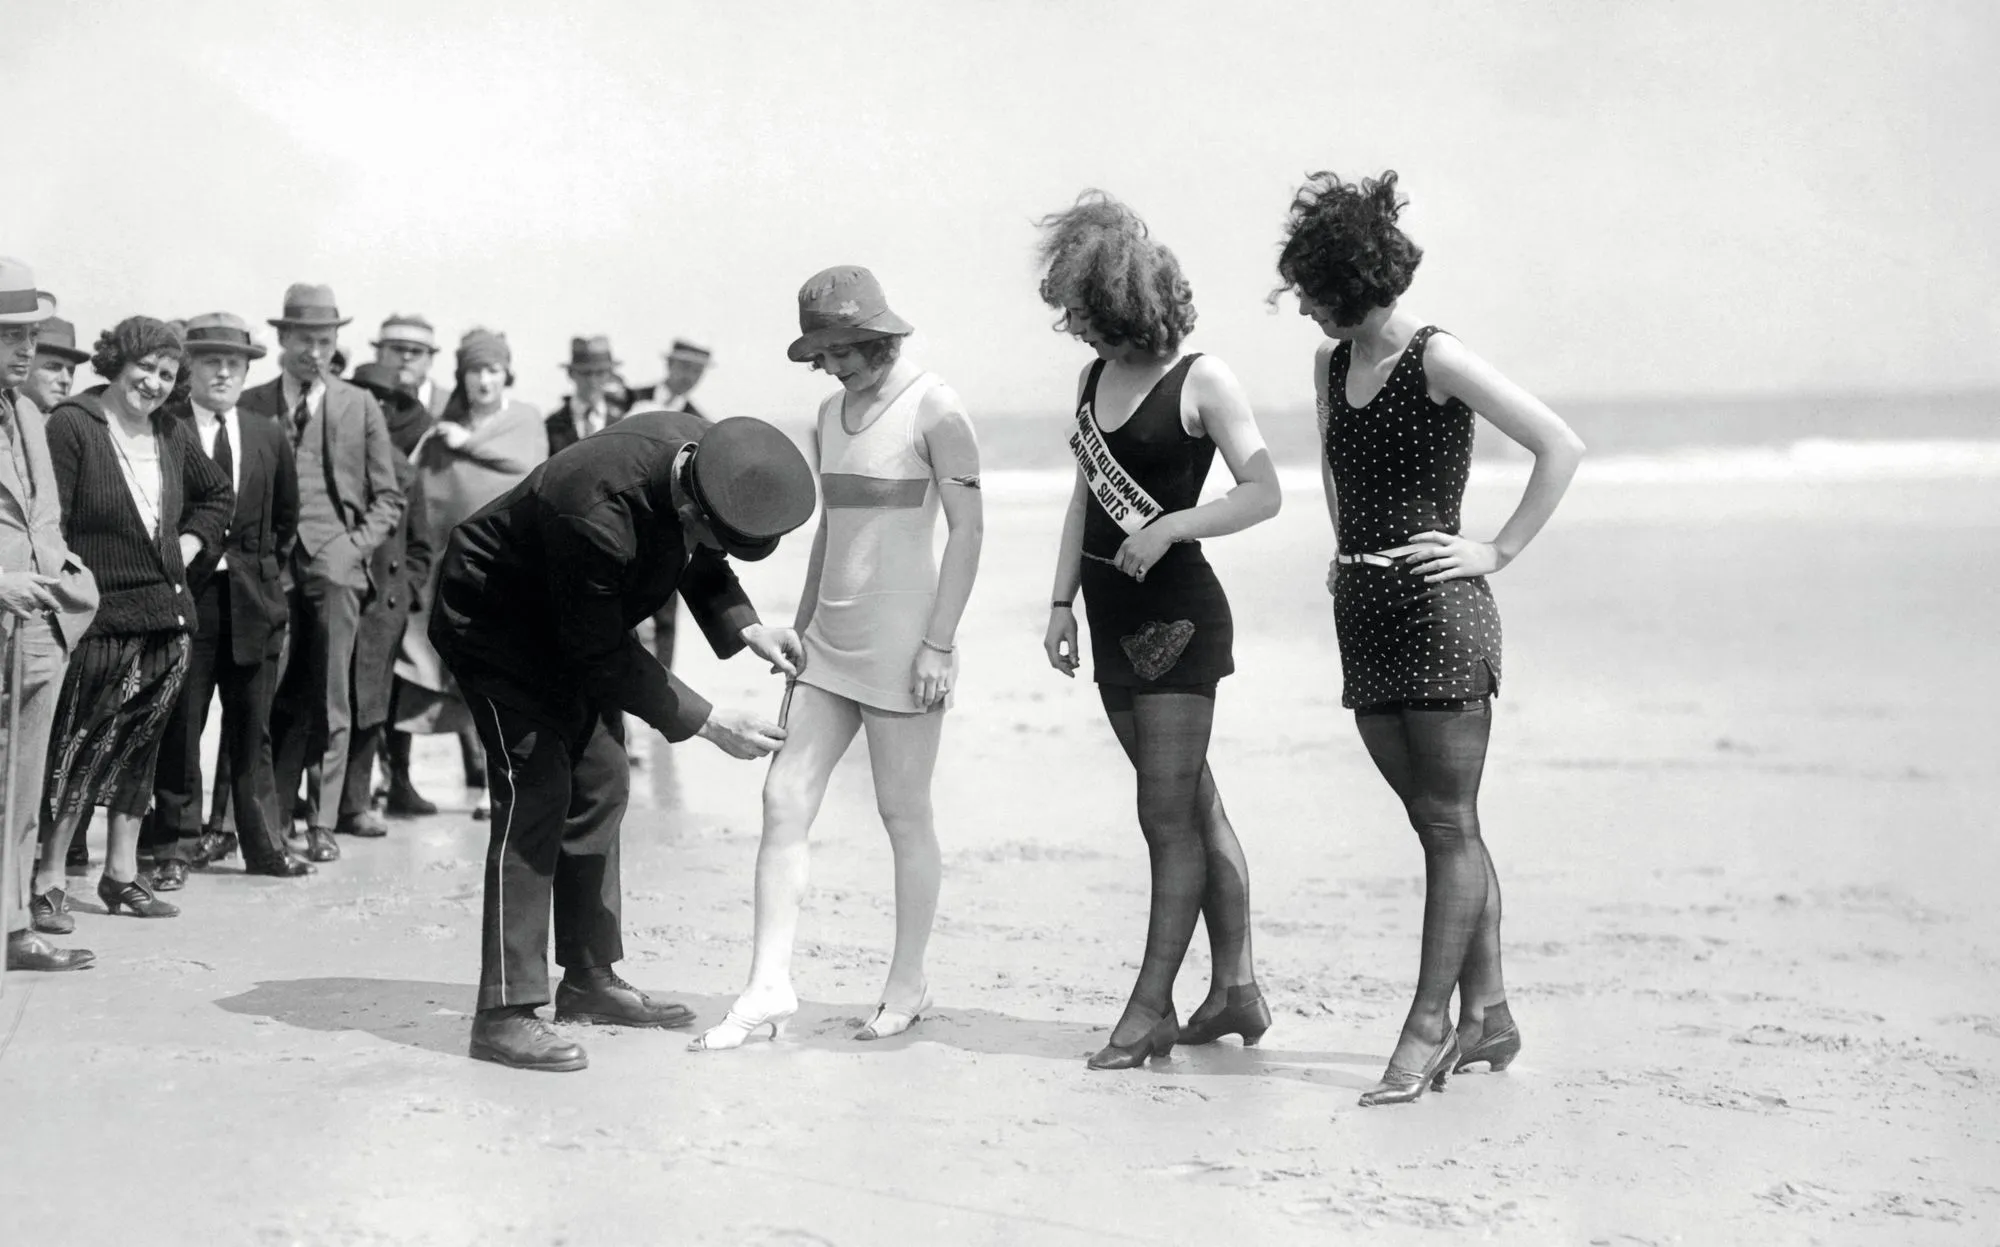 En 1921, à Atlantic City, un policier mesure la longueur des maillots de bain pour s'assurer qu'ils sont décents.